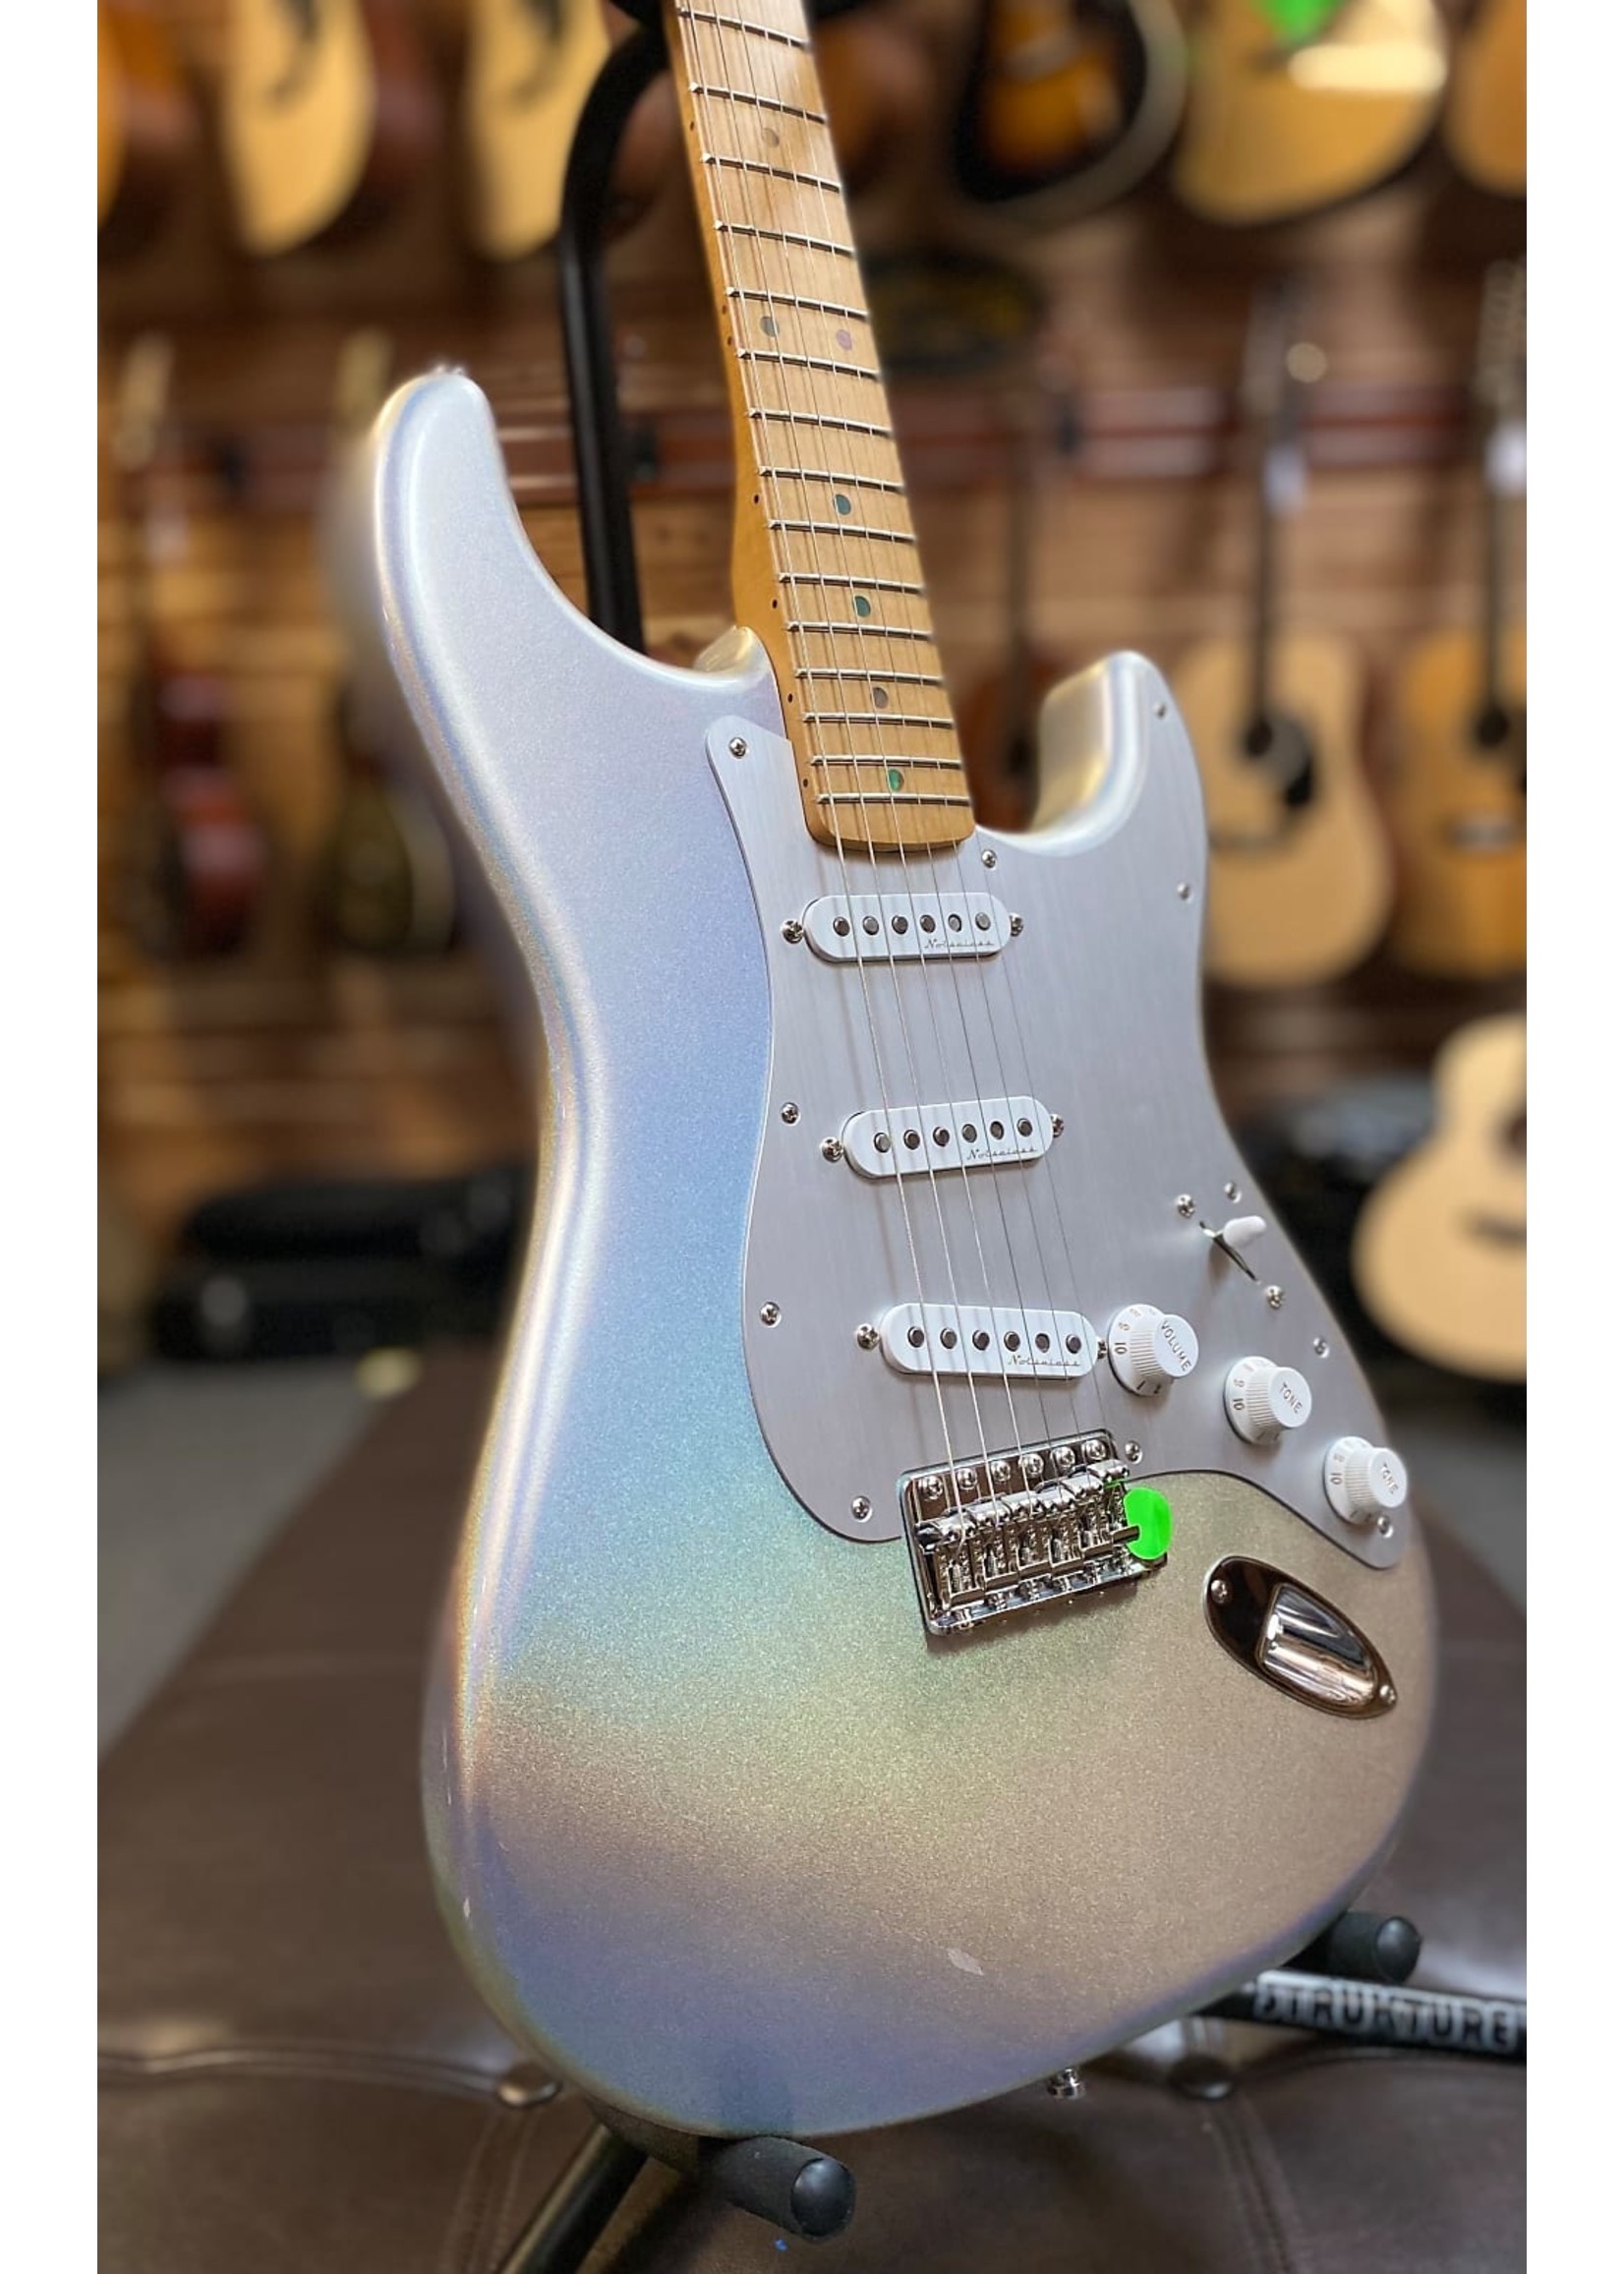 FENDER Fender H.E.R. Stratocaster  "Chrome Glow" Electric Guitar w/Gigbag